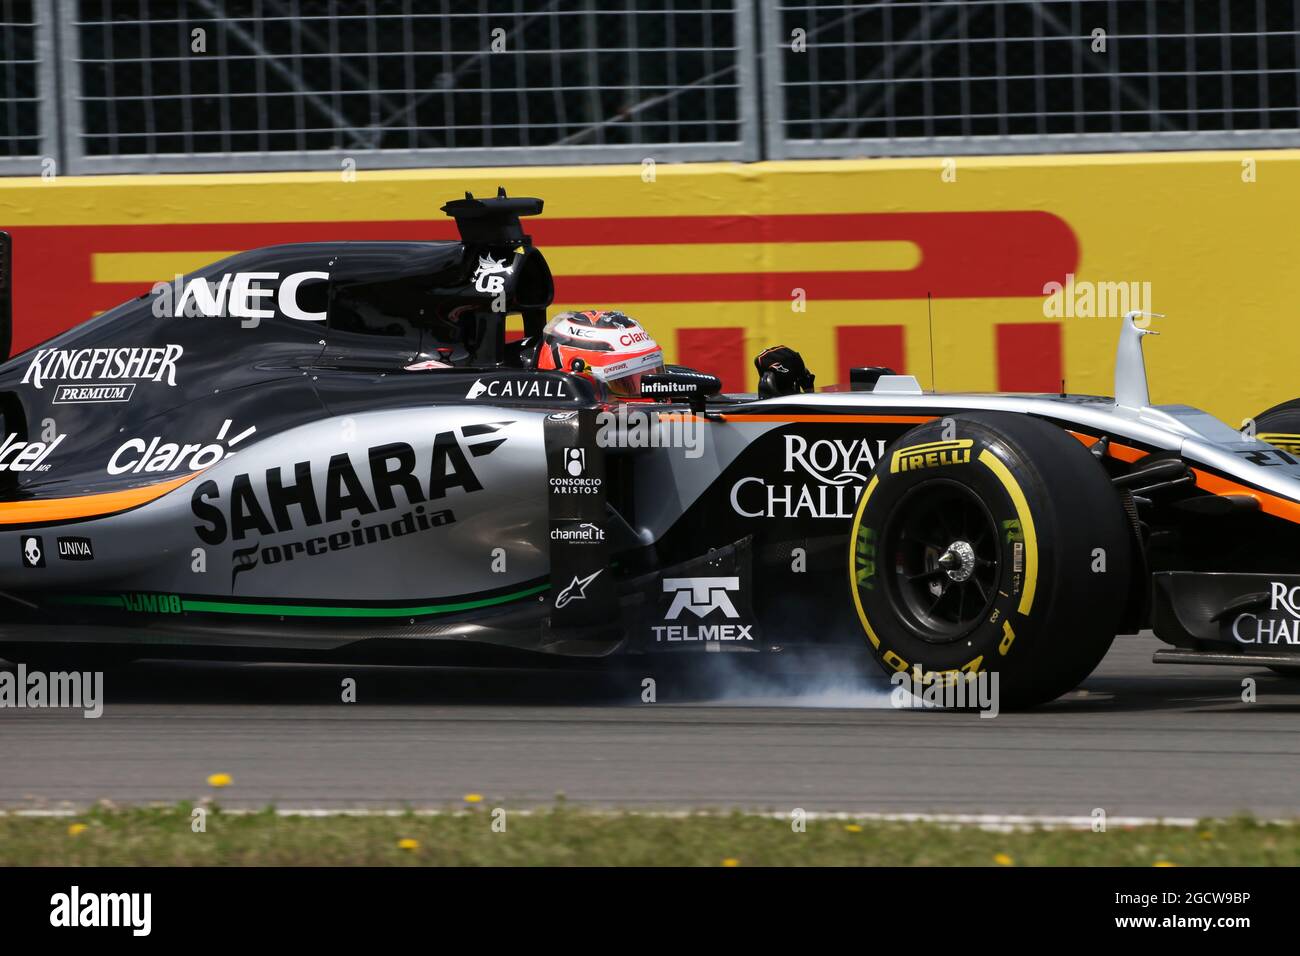 Nico Hulkenberg (GER) Sahara Force India F1 VJM08 locks up under braking